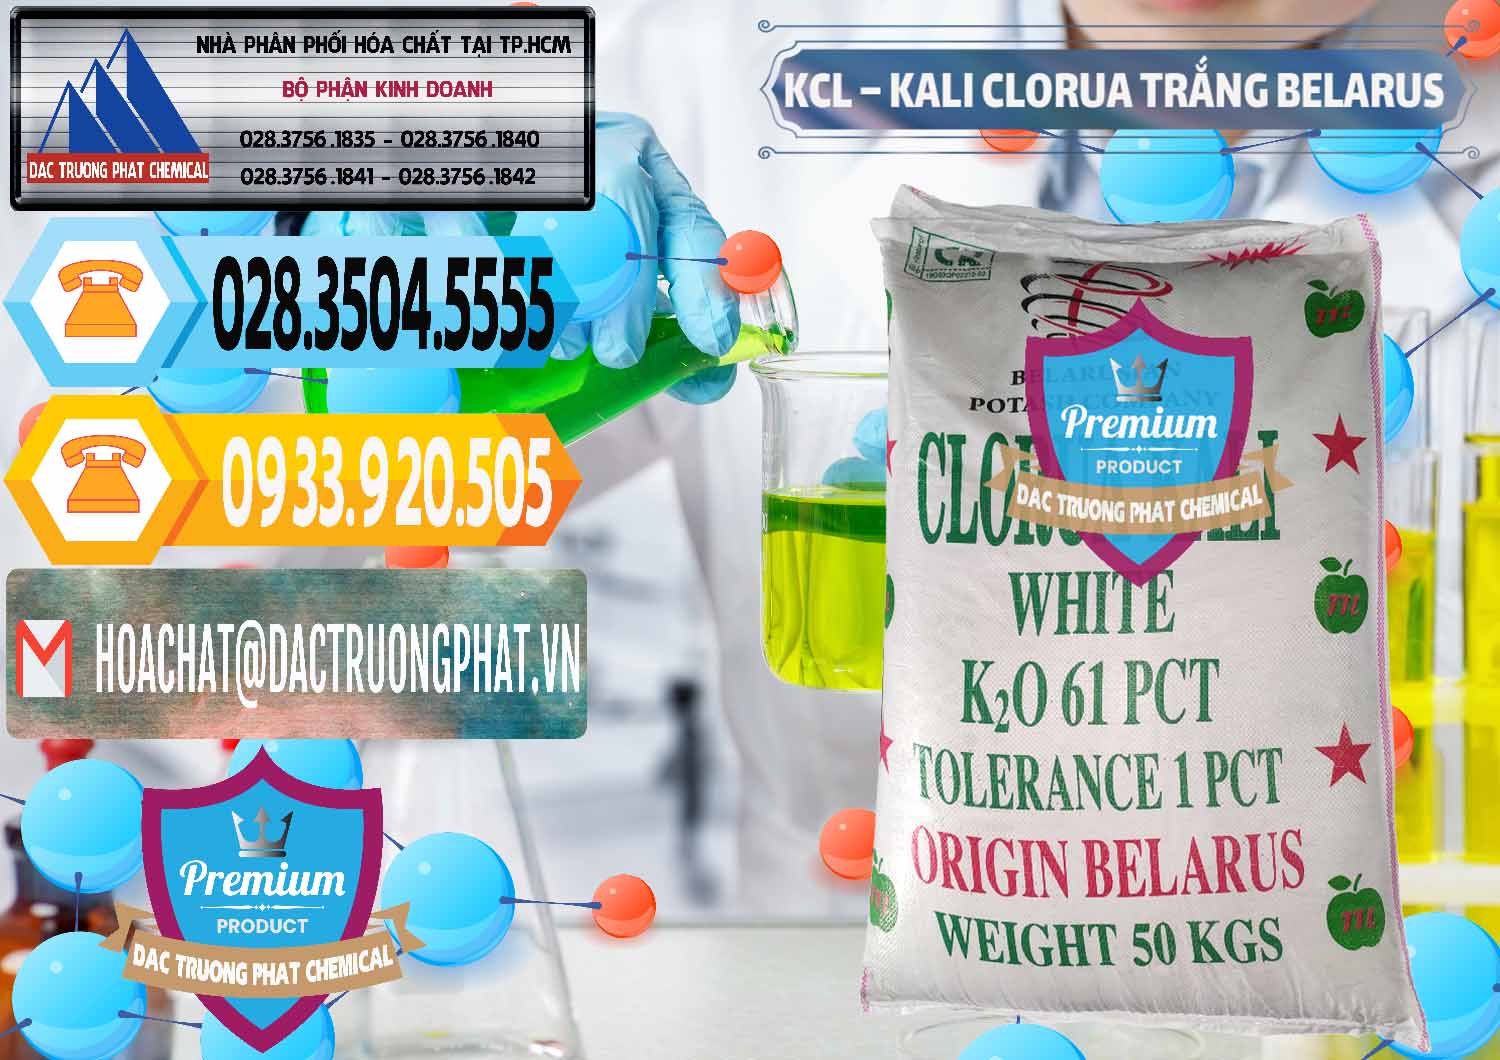 Cty kinh doanh ( bán ) KCL – Kali Clorua Trắng Belarus - 0085 - Cty cung cấp ( phân phối ) hóa chất tại TP.HCM - hoachattayrua.net